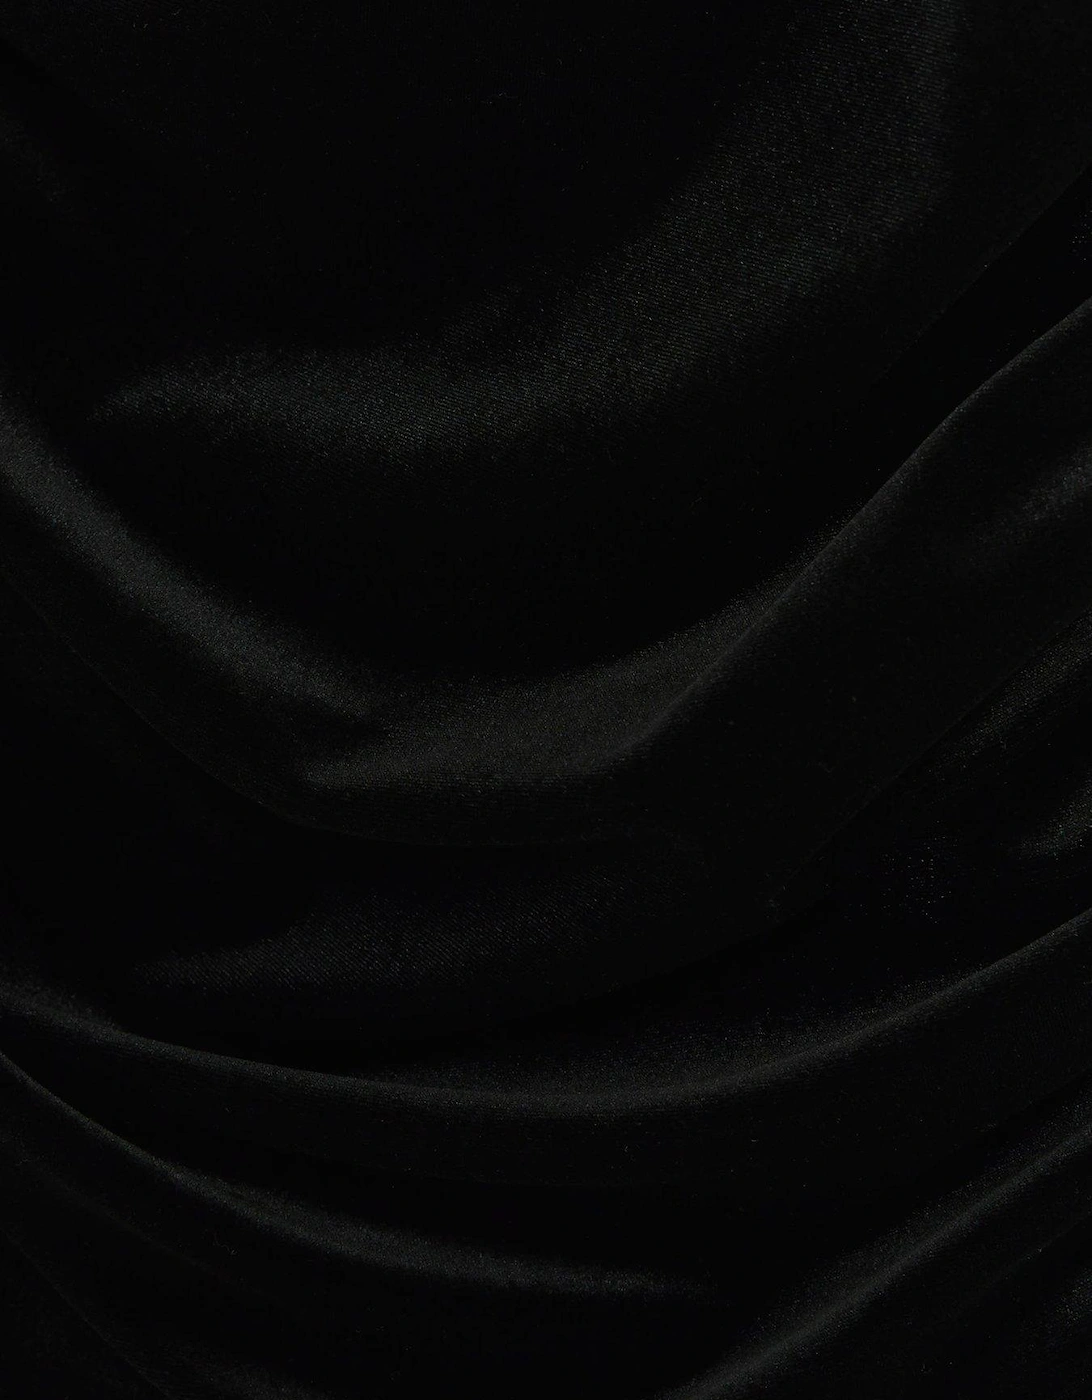 Ruched Velvet Cowl Mini Dress - Black